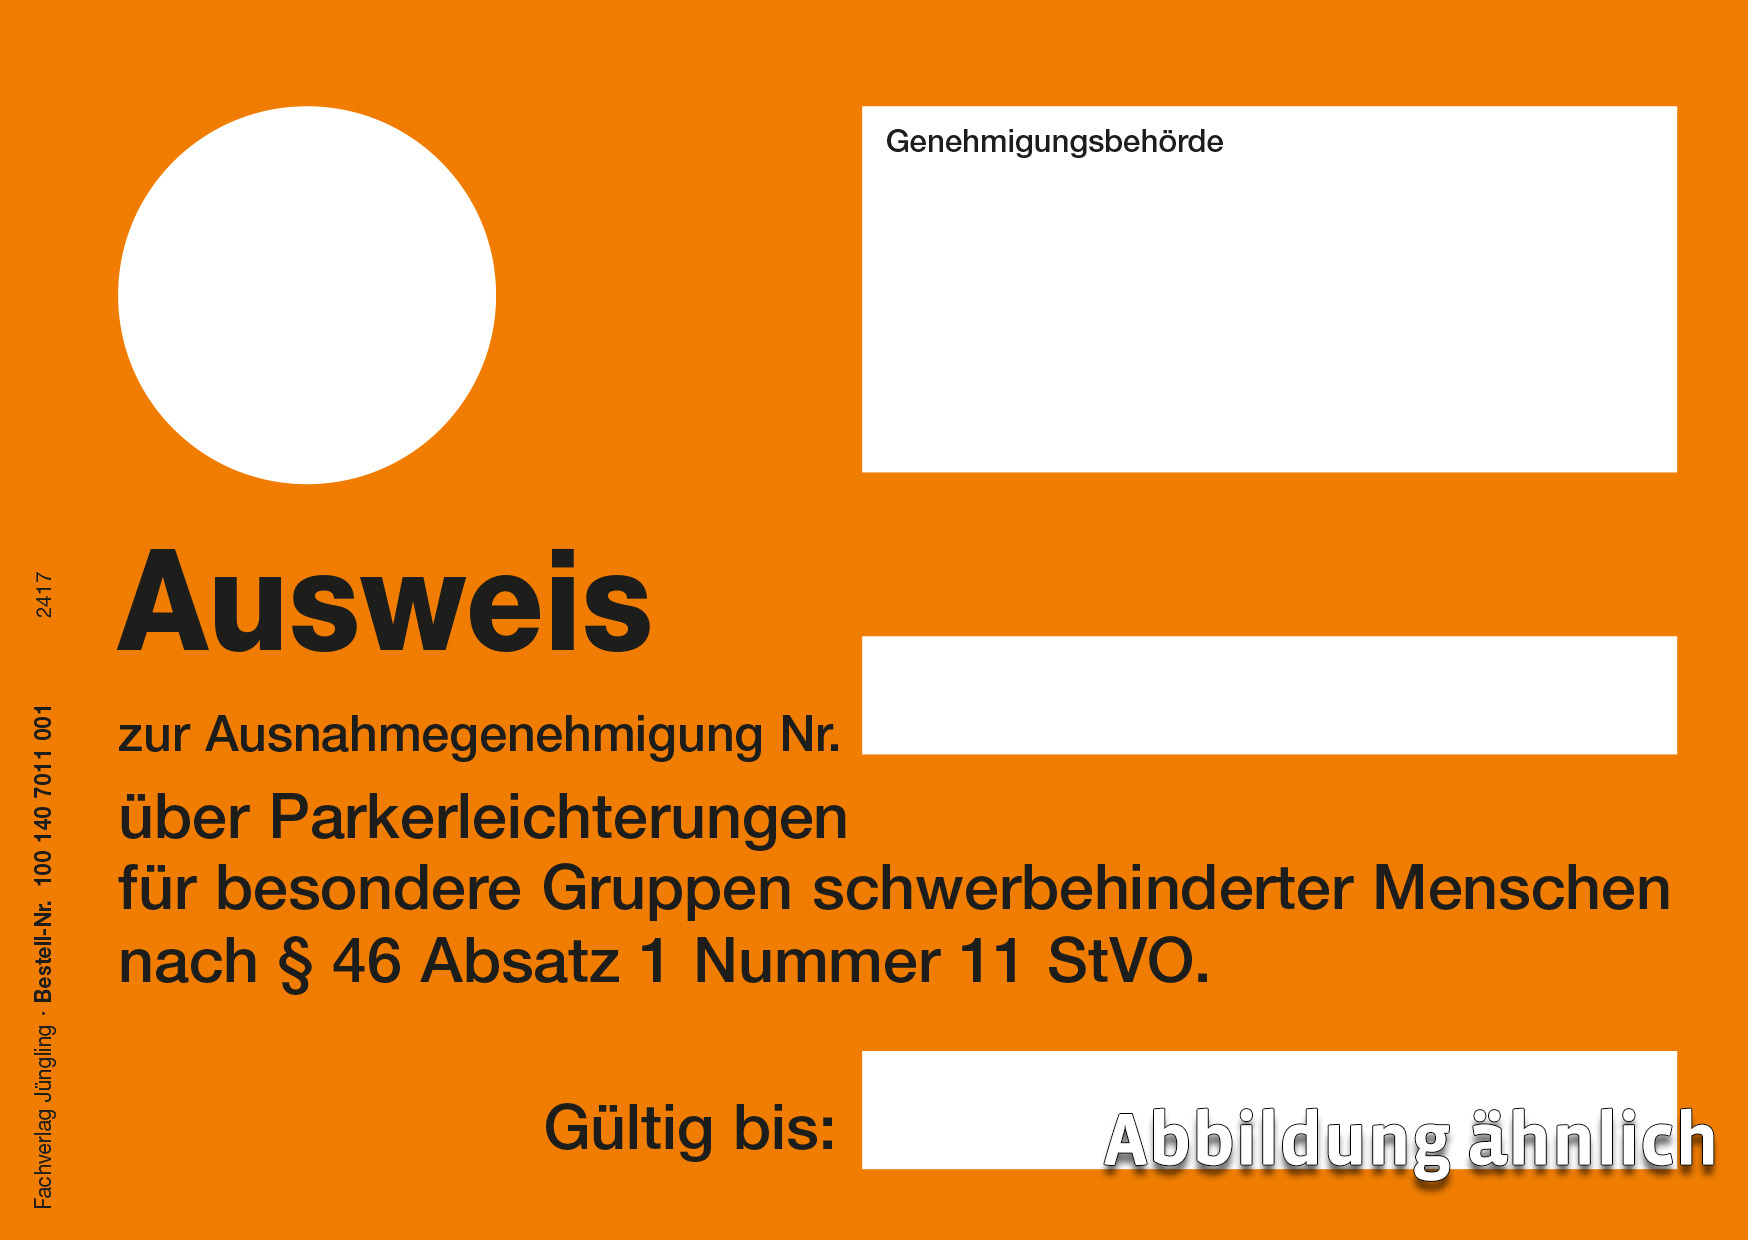 LG Tübingen: Handschriftliche, offensichtliche Änderungen an  Anwohnerparkausweis keine Urkundenfälschung – Verkehrsrecht Blog